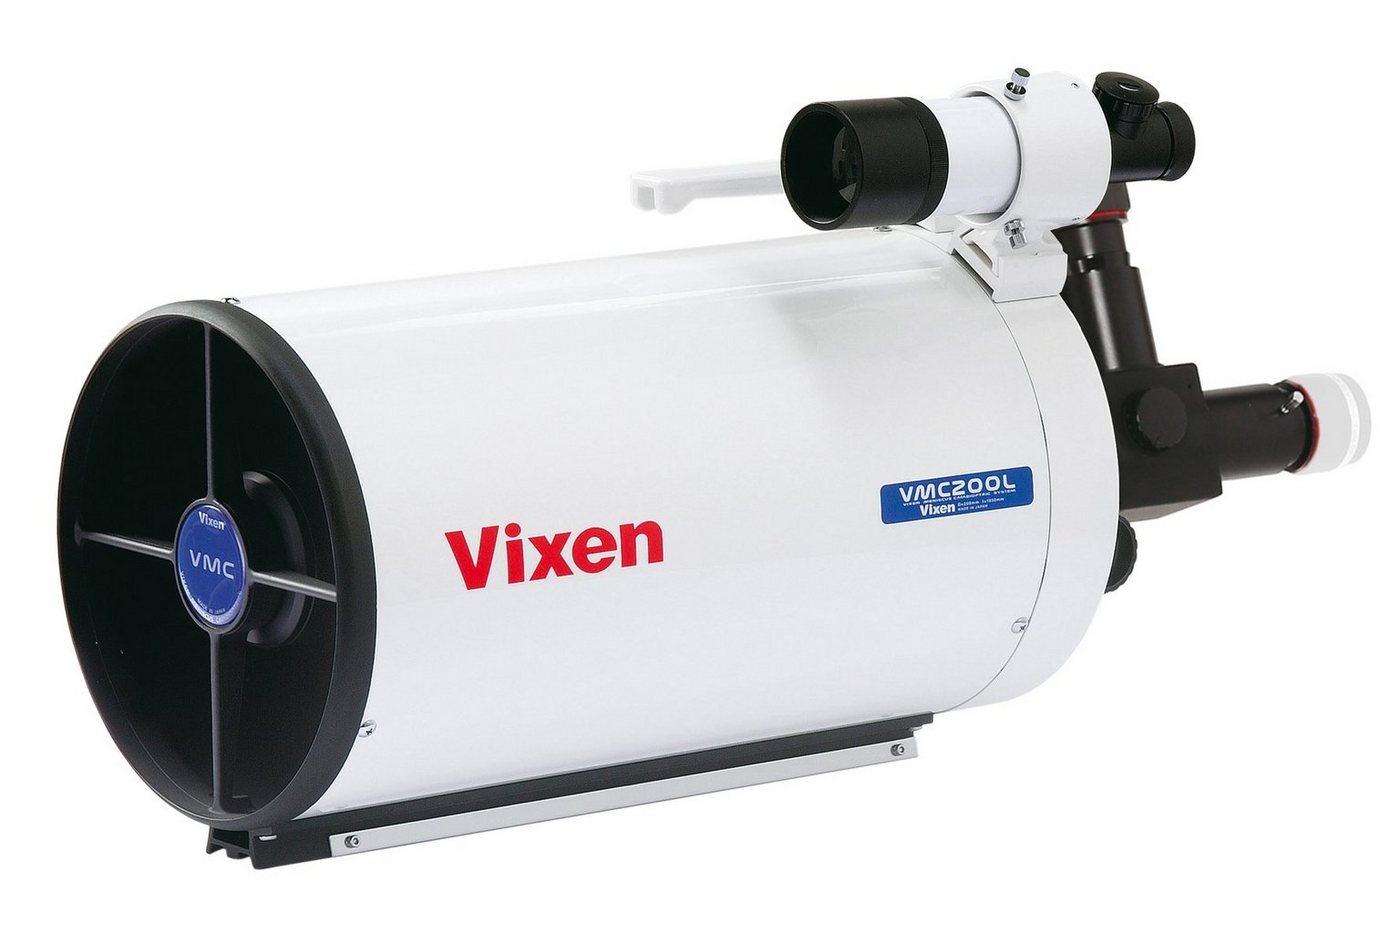 Vixen Teleskop VMC200L Maksutov-Cassegrain Spiegel - optischer Tubus von Vixen